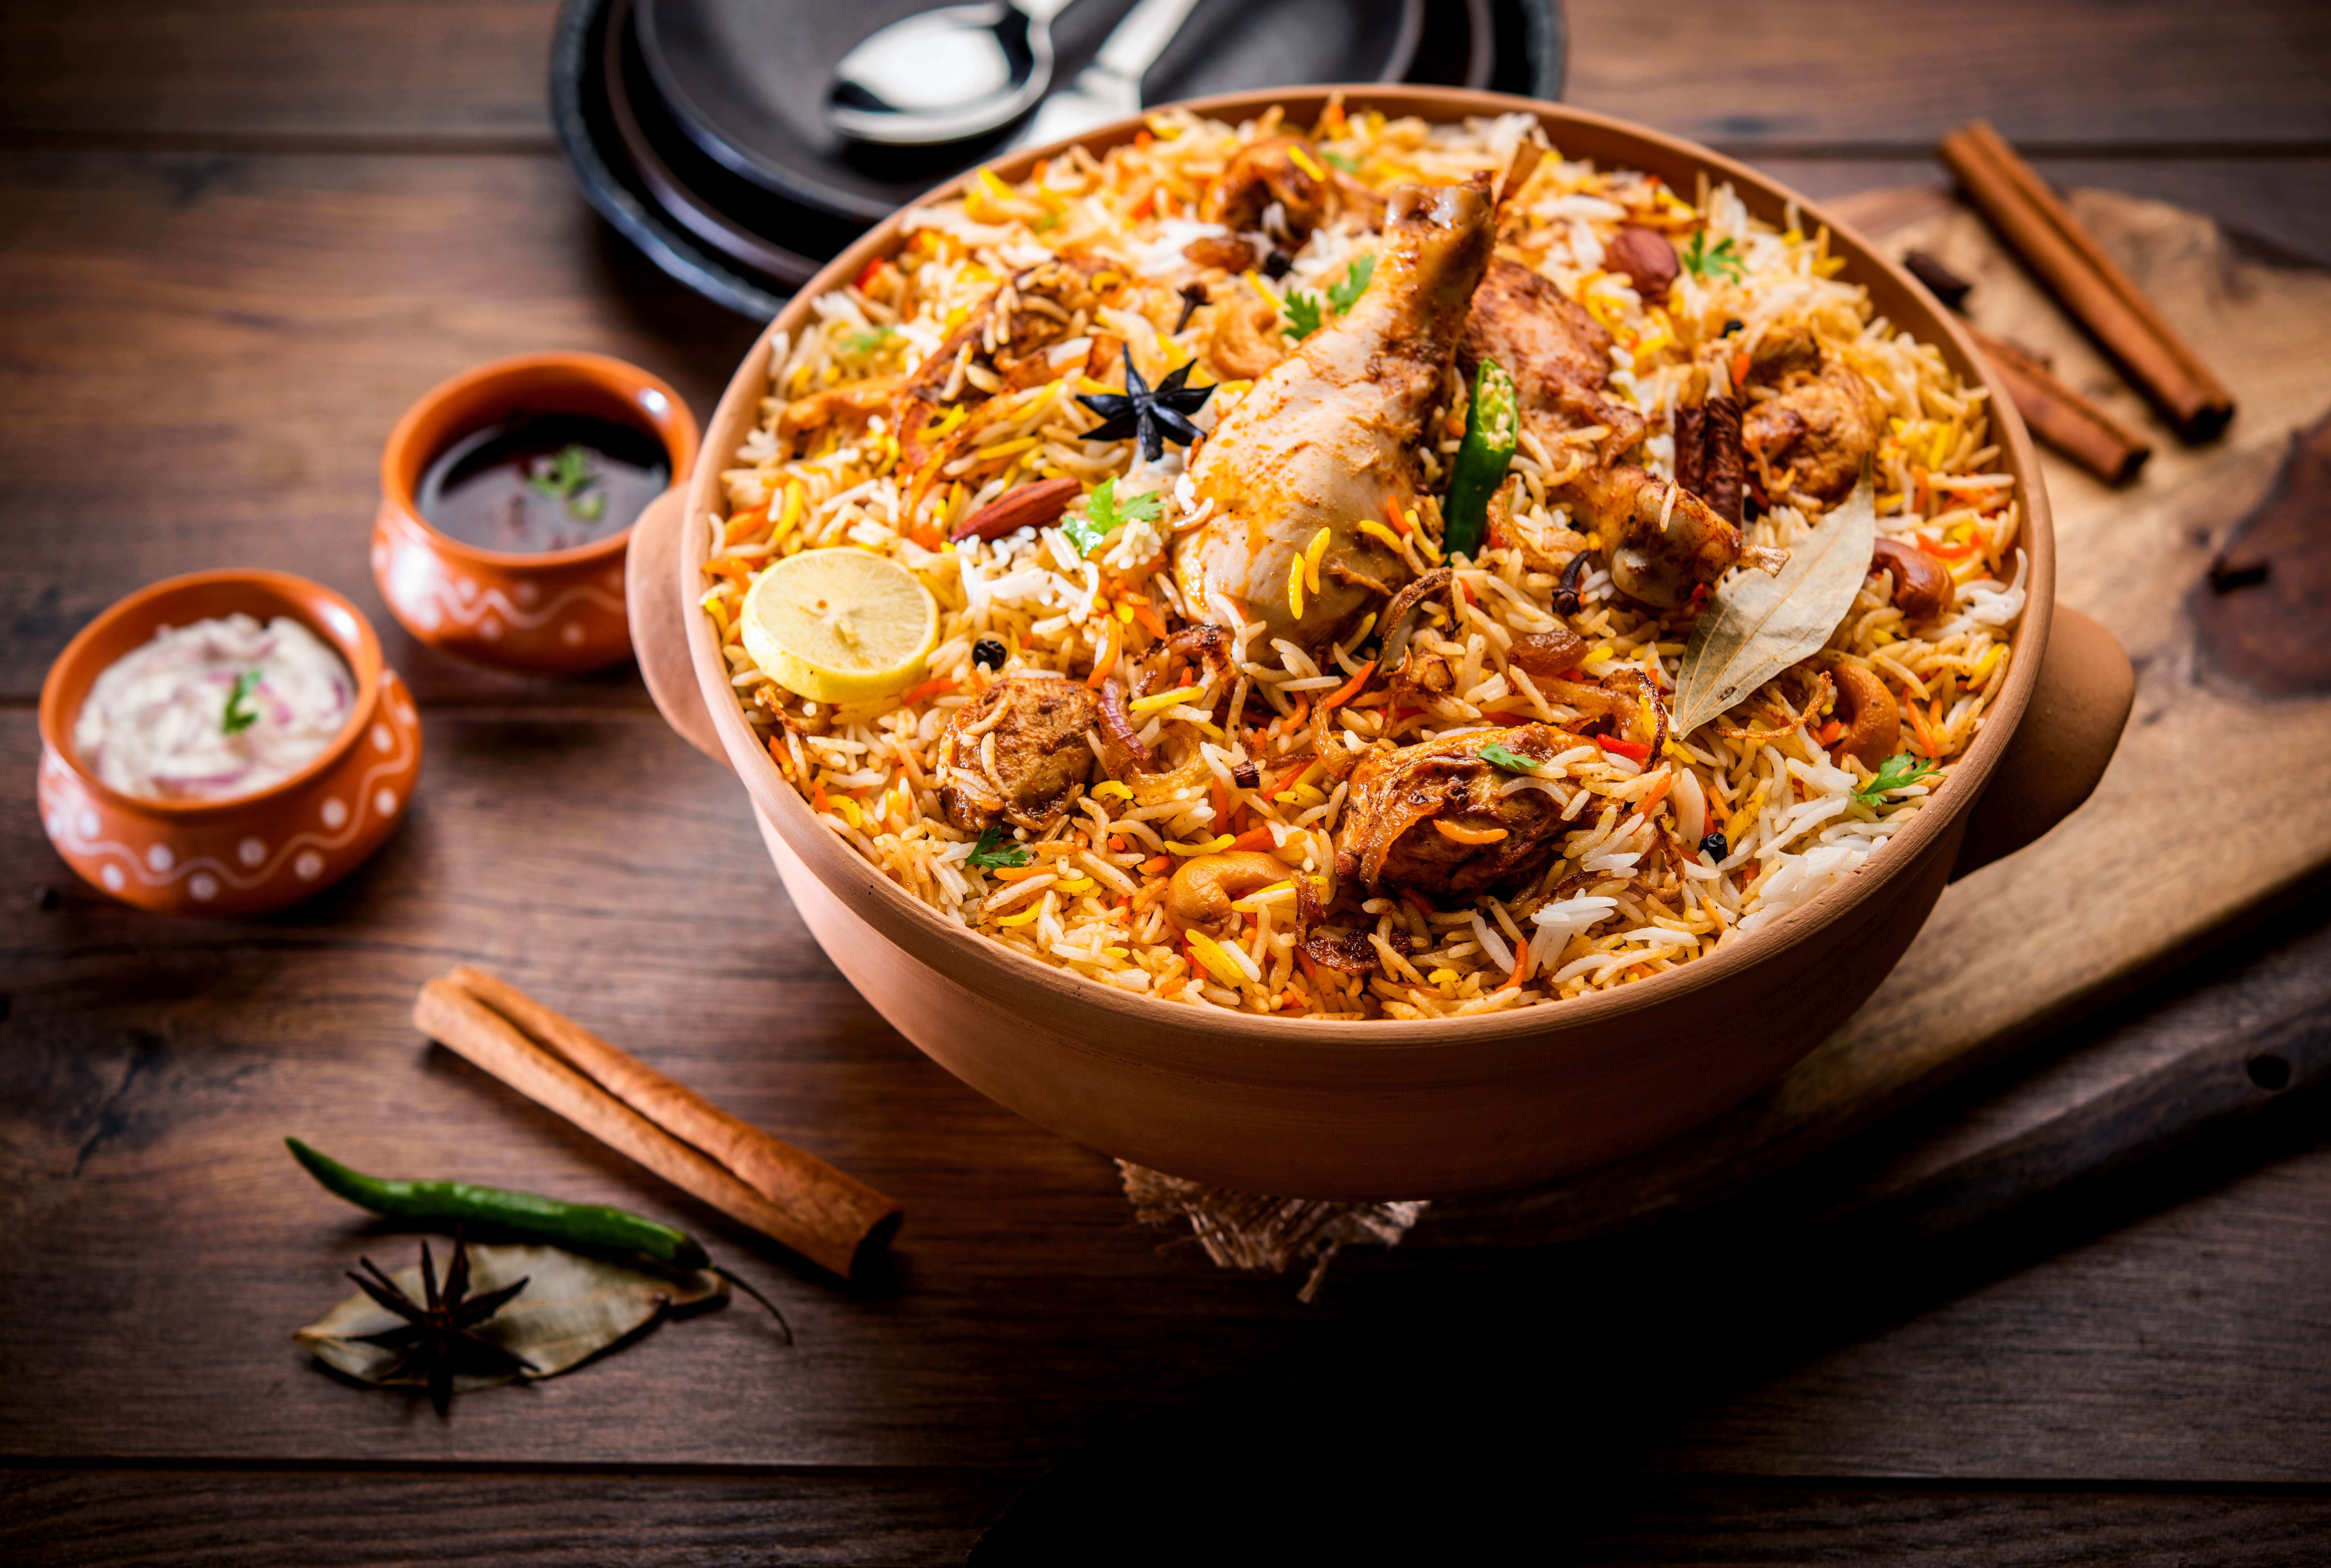 dum-handi-chicken-biryani-is-prepared-earthen-clay-pot-called-haandi-popular-indian-non-vegetarian-food